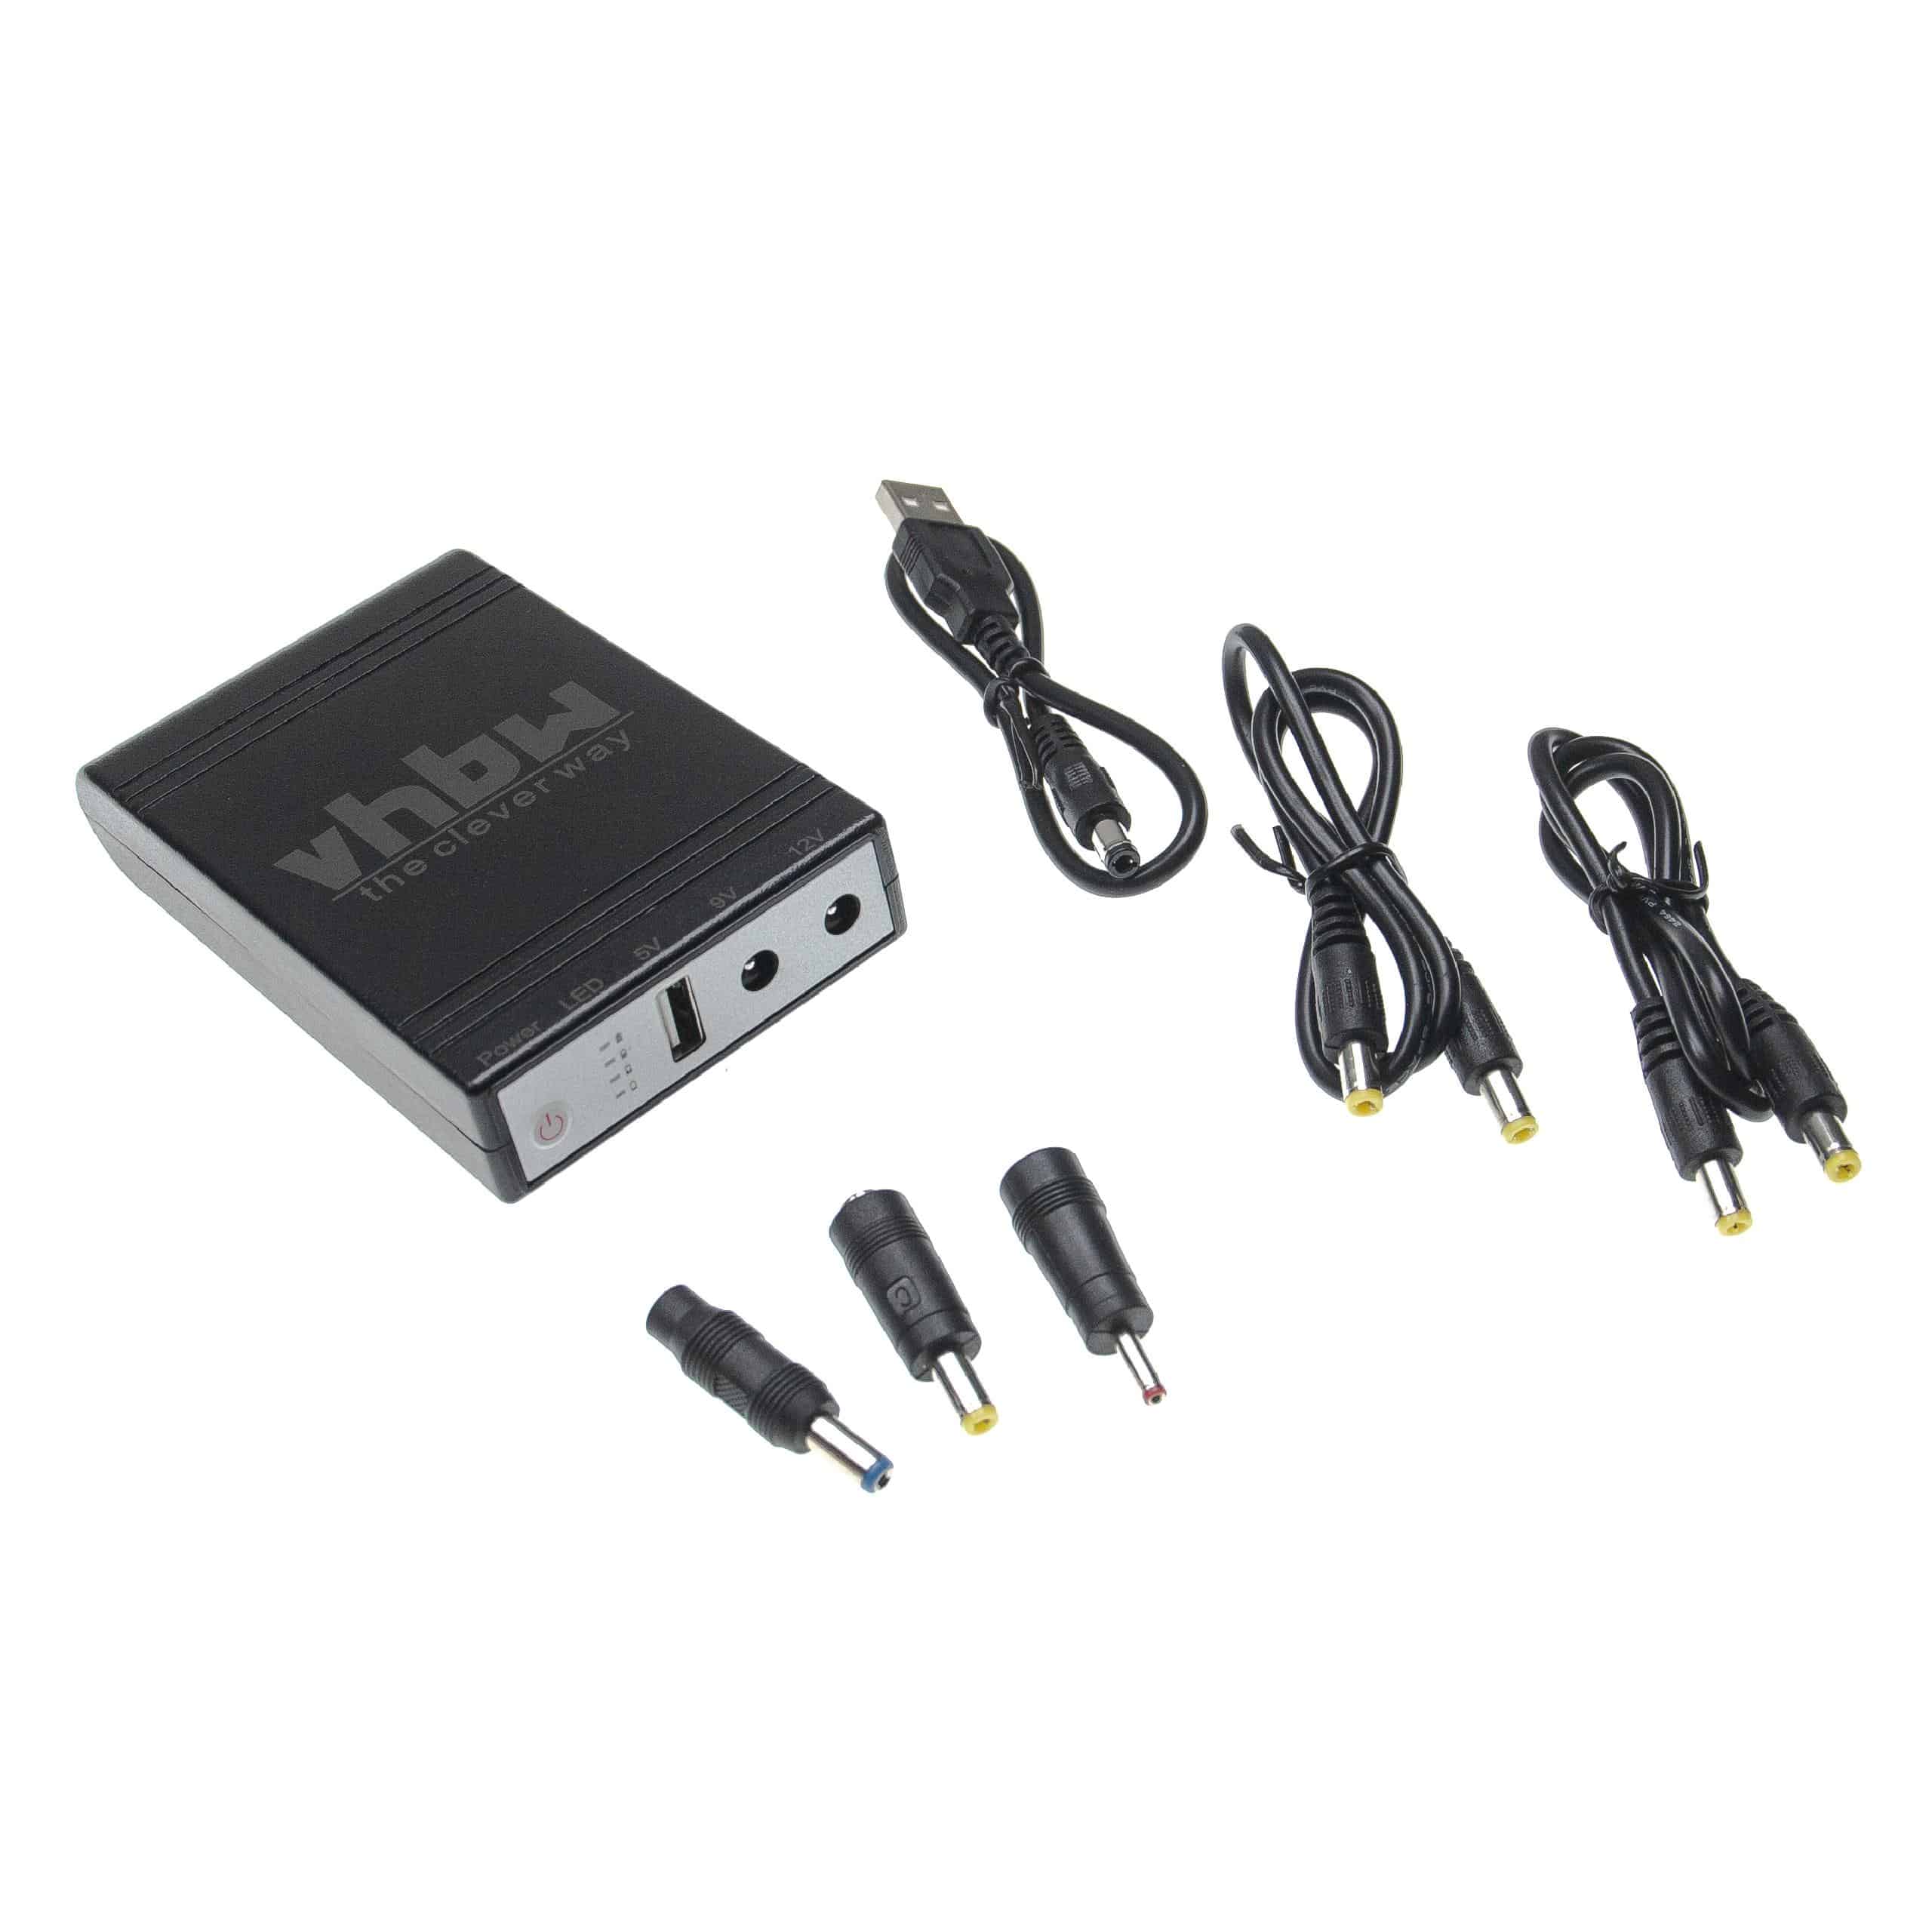 Mini UPS per router, IP cam, modem, computer ecc. - USB 5 V / DC 9 V / DC 12 V, 1,0 A